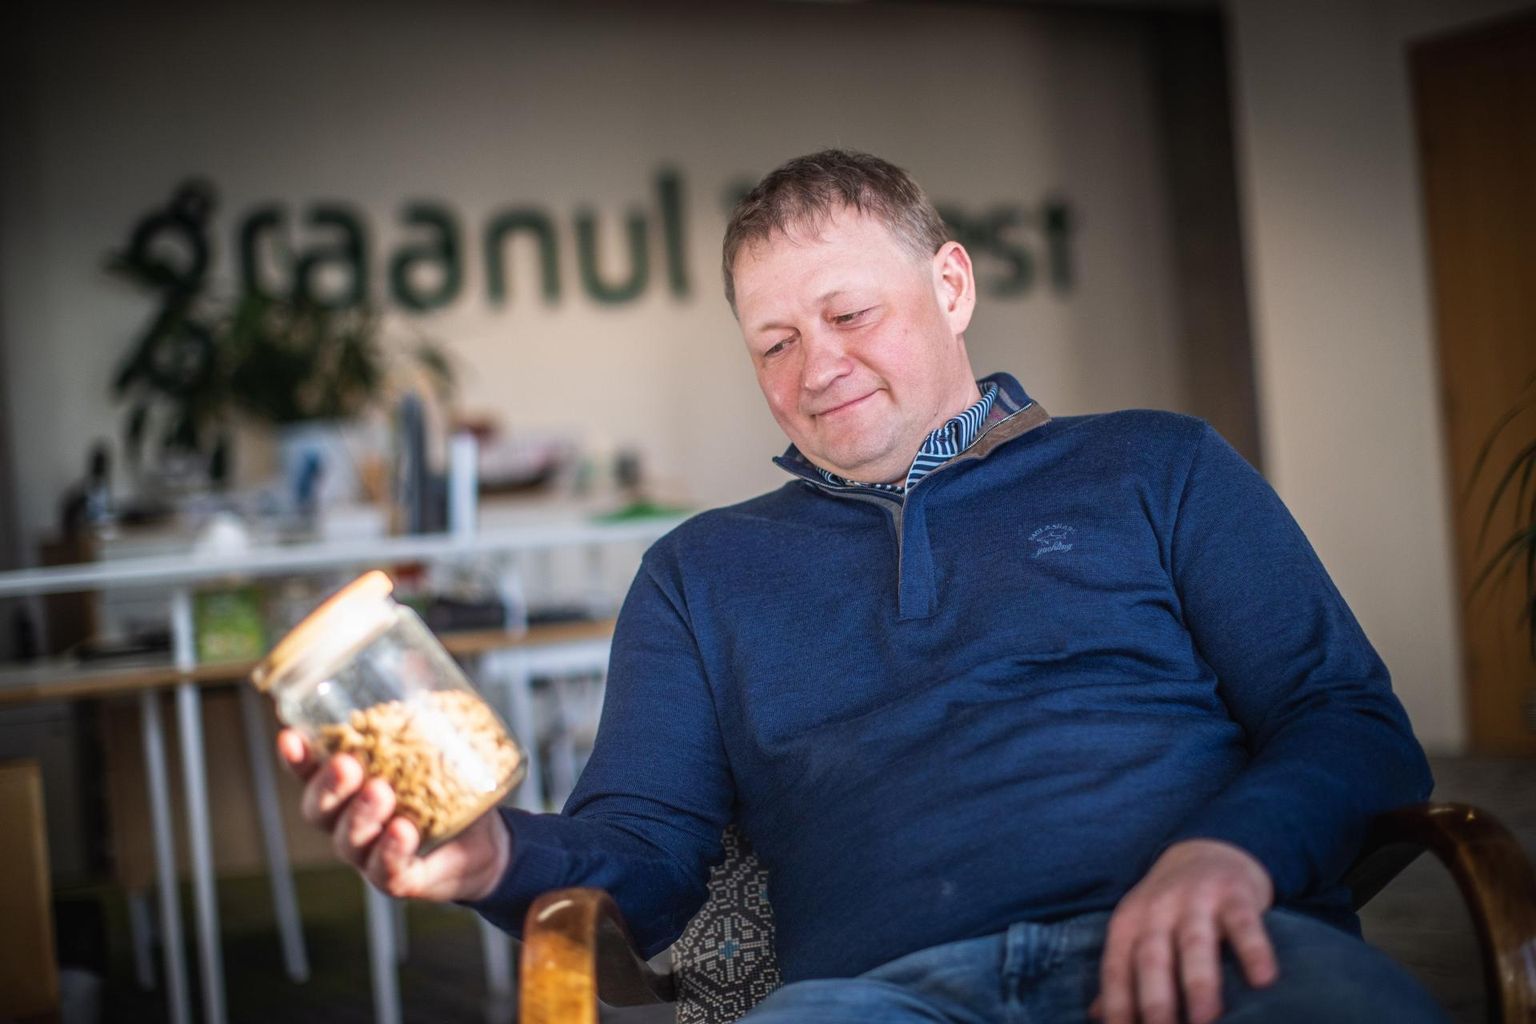 Graanul Investi juht Raul Kirjanen hoiab müügihinda saladuses